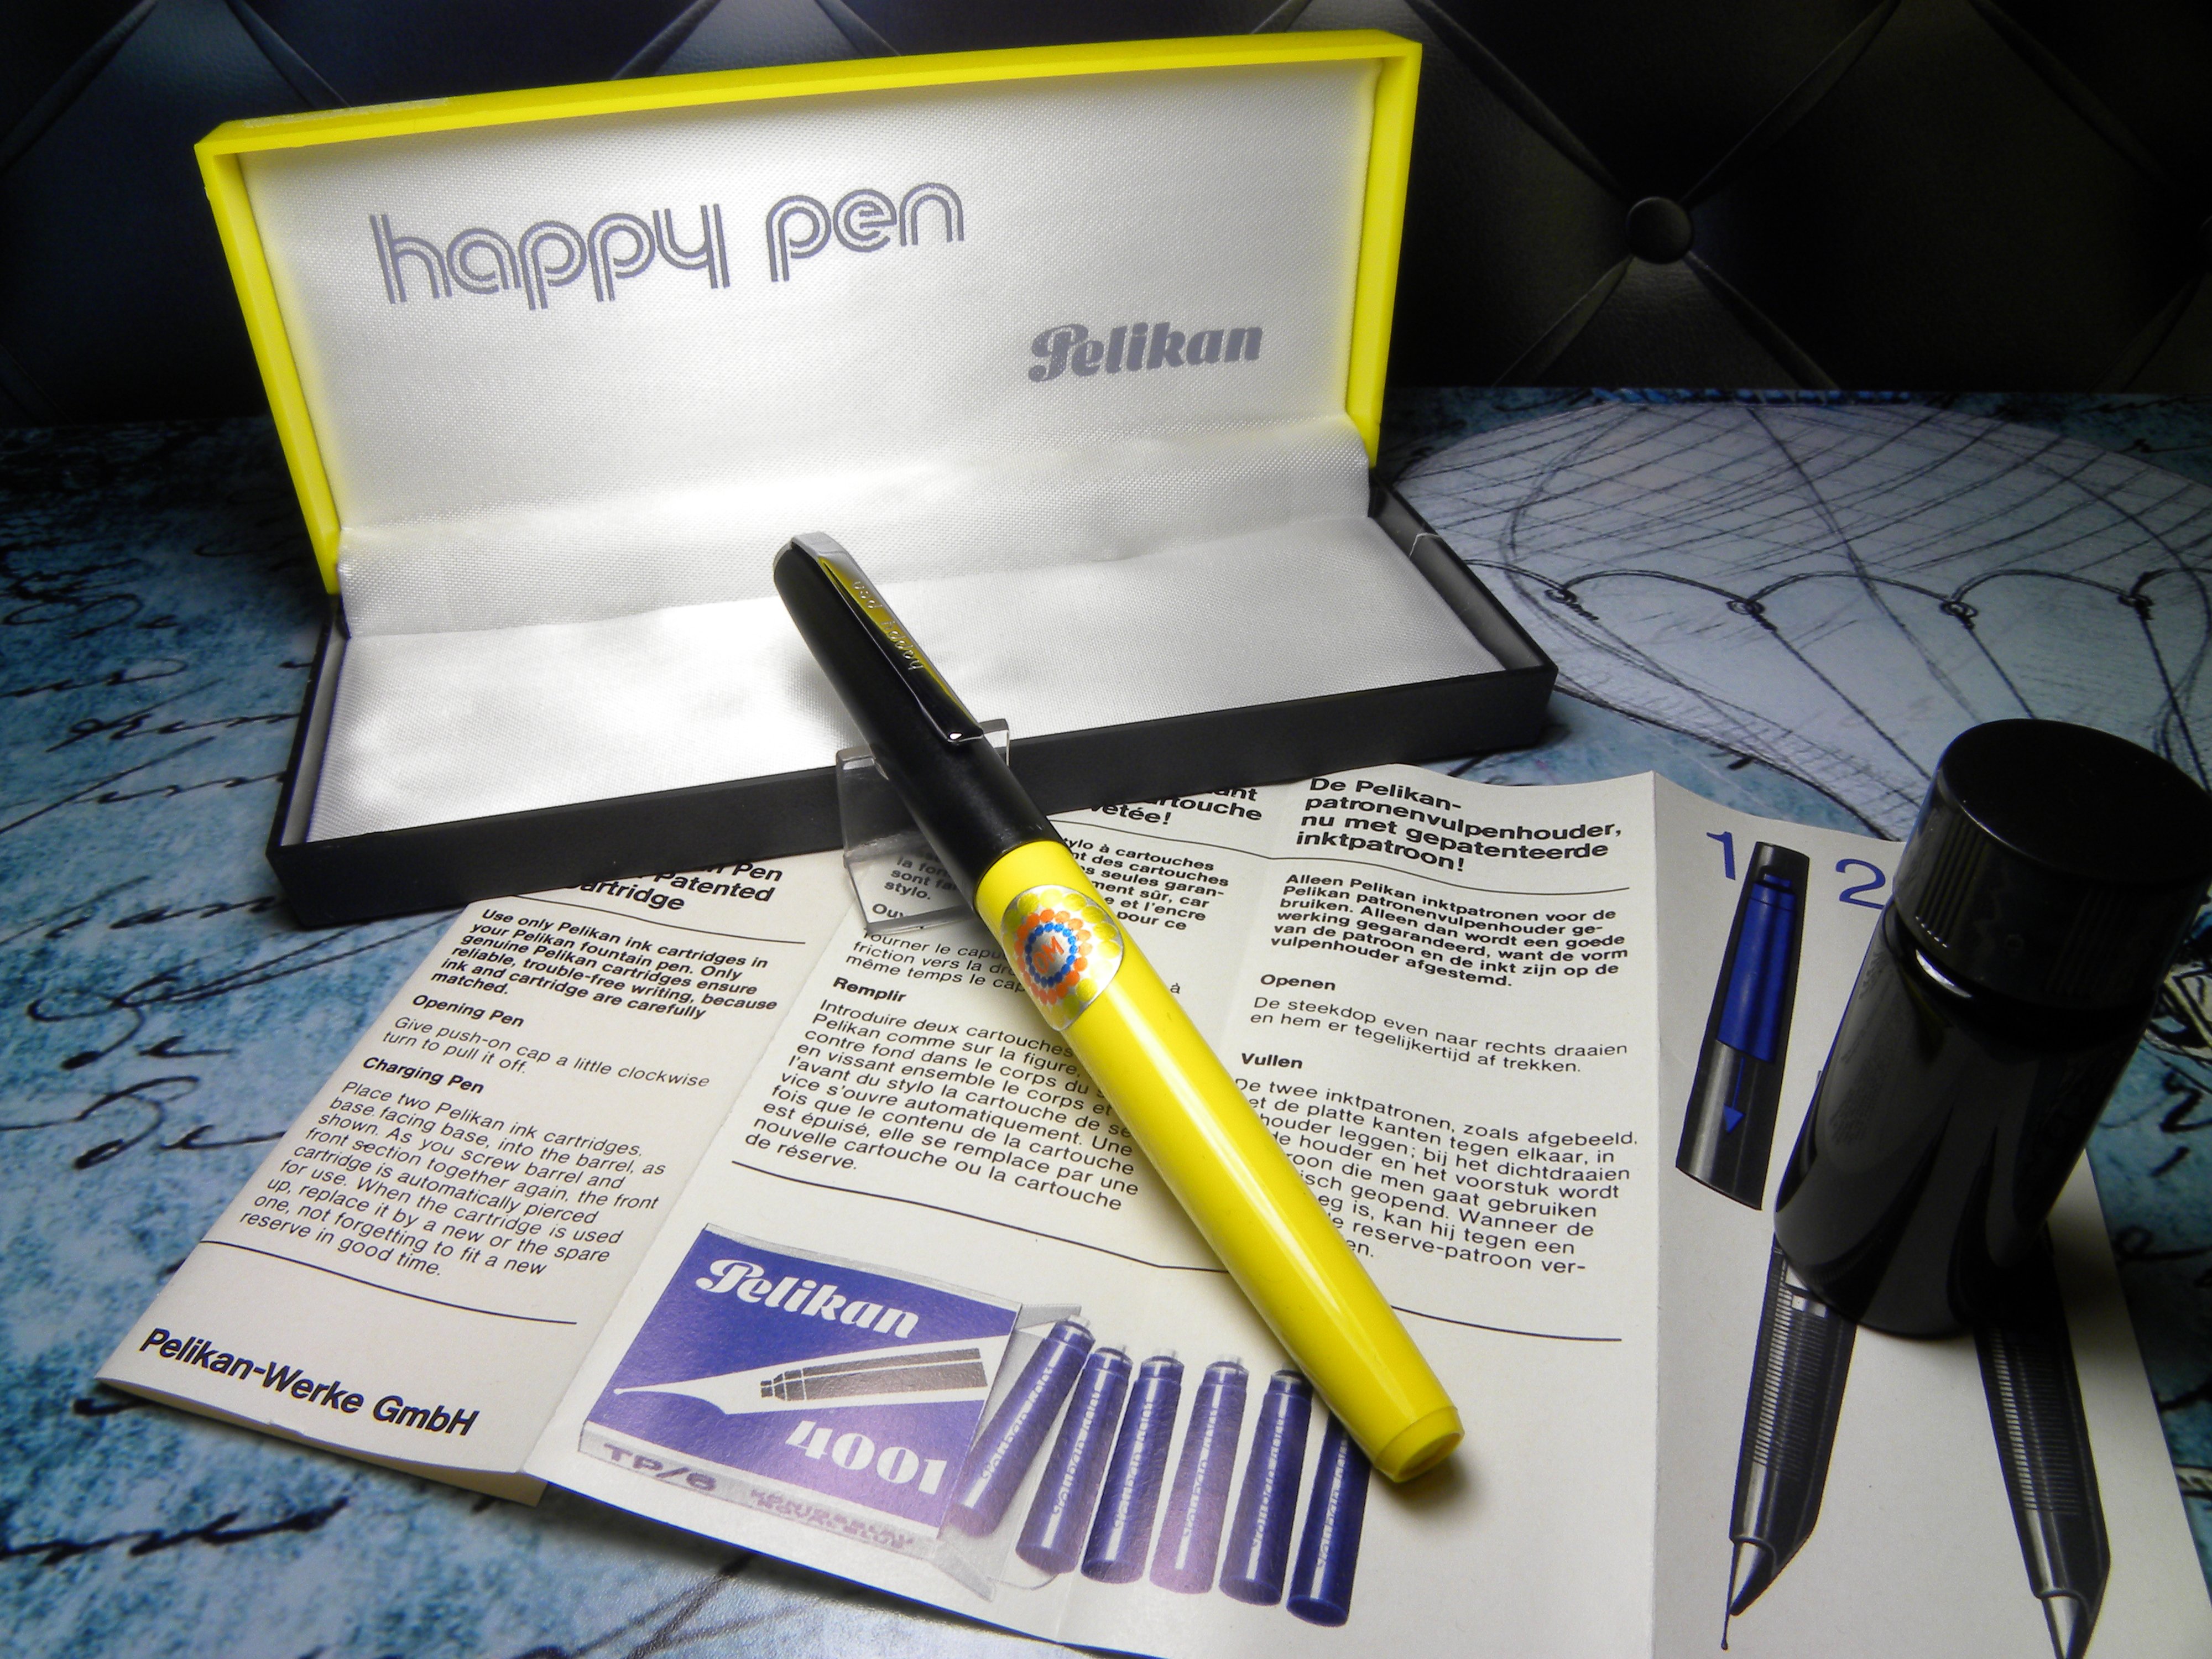 voorzetsel Gebeurt partner Yesteryear's Fountain Pens on Twitter: "Vintage "#Pelikan Happy Pen"  #FountainPen in Box-Sunflower Yellow and Matt Black-Germany 1970s.  https://t.co/1ruD46nt8x https://t.co/04seq7wy5R" / Twitter